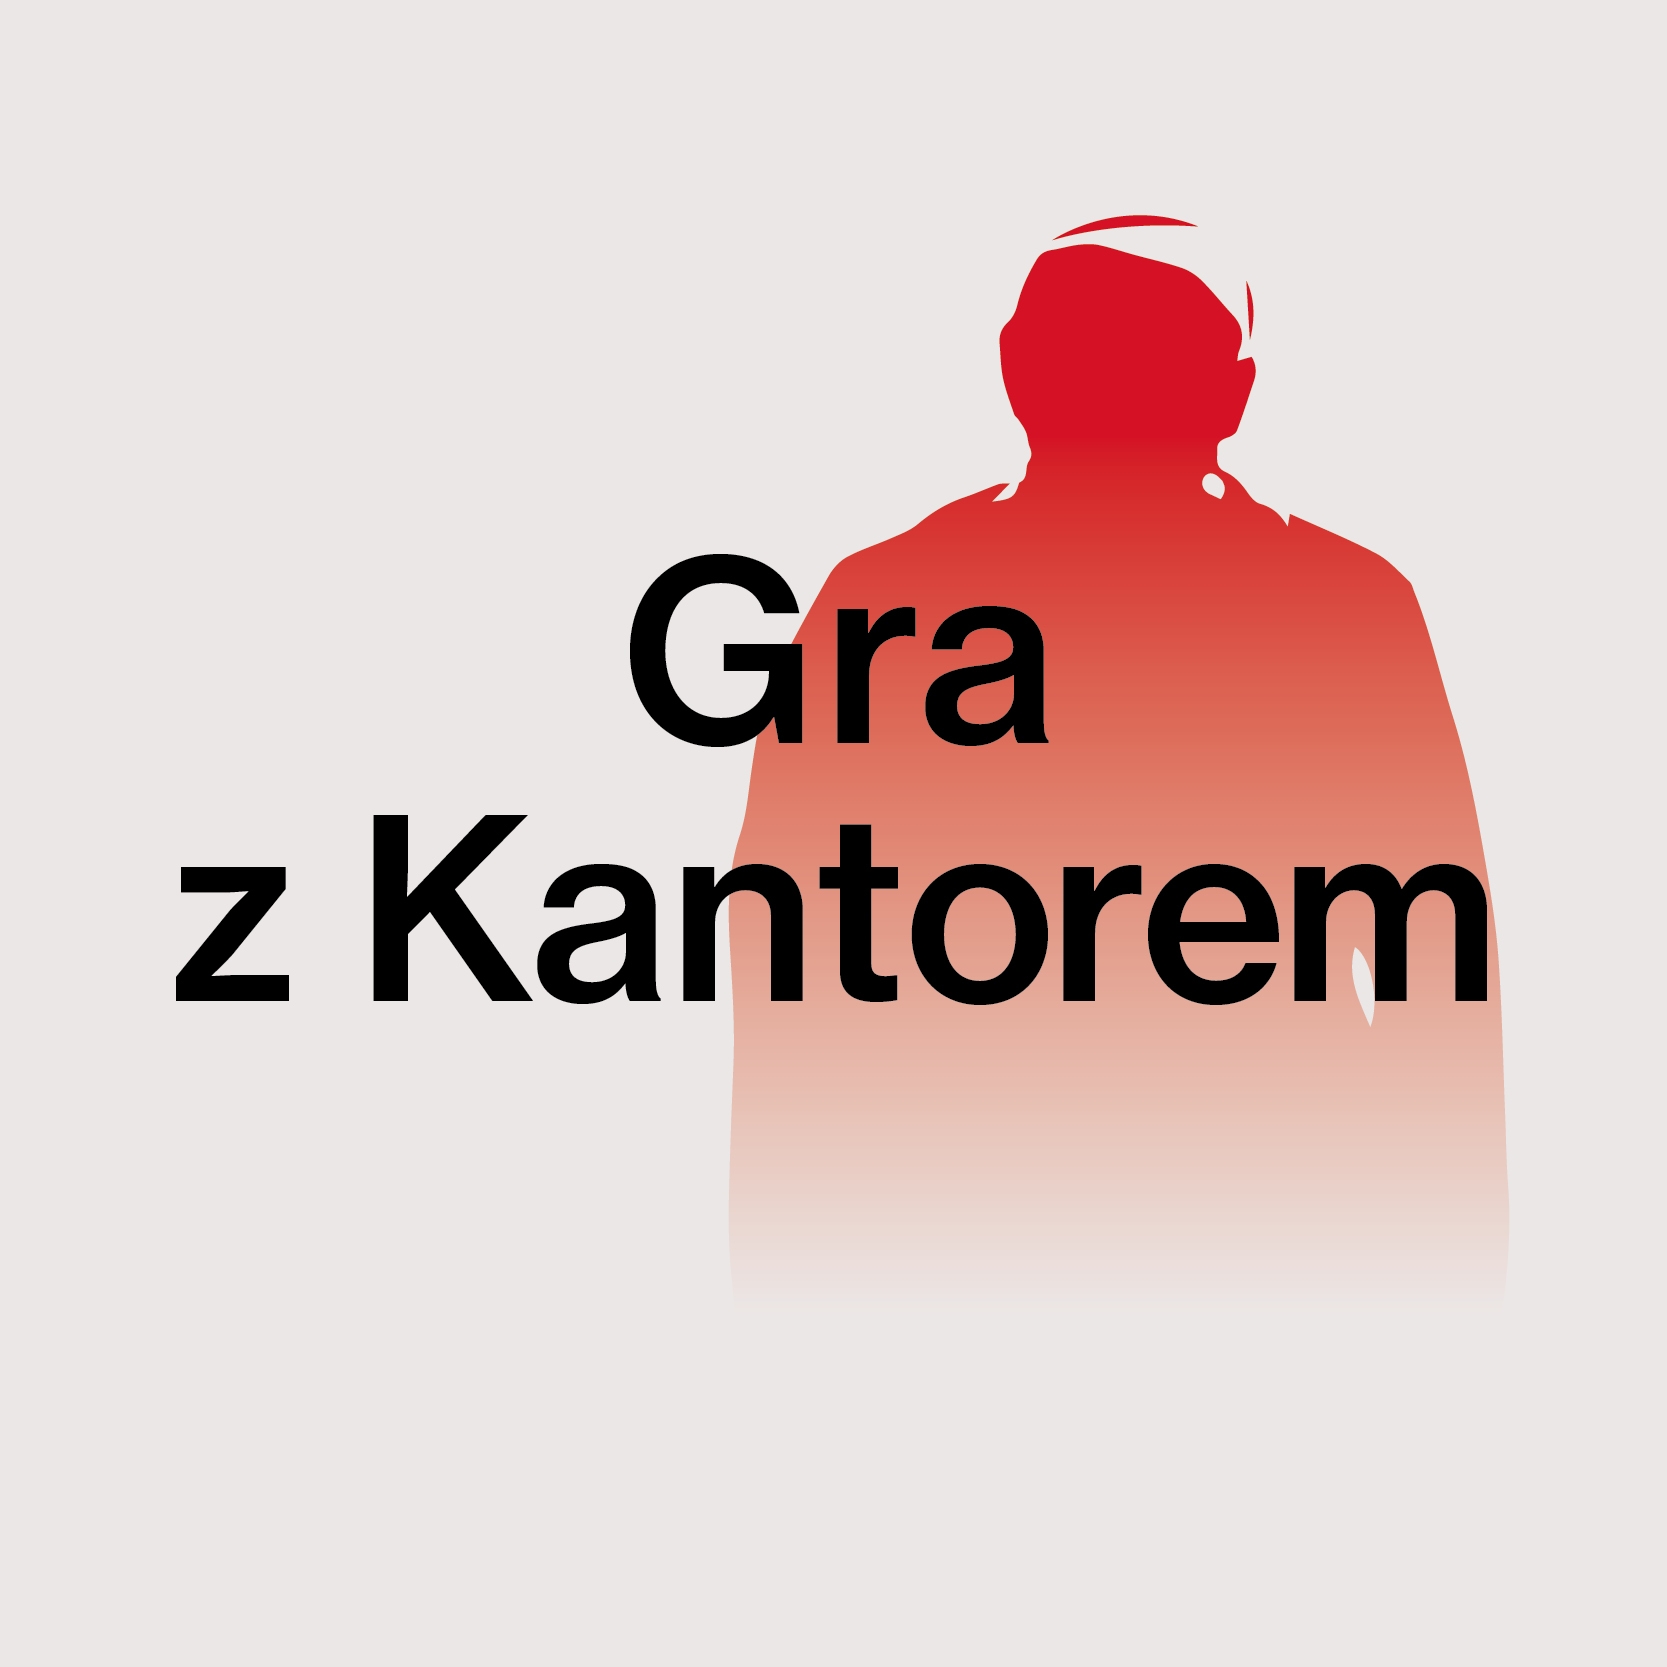 Grafika promująca cykl Gra z Kantorem: na szarym tle zarys czerwonej sylwetki człowieka oraz tytuł cyklu czarnymi literami